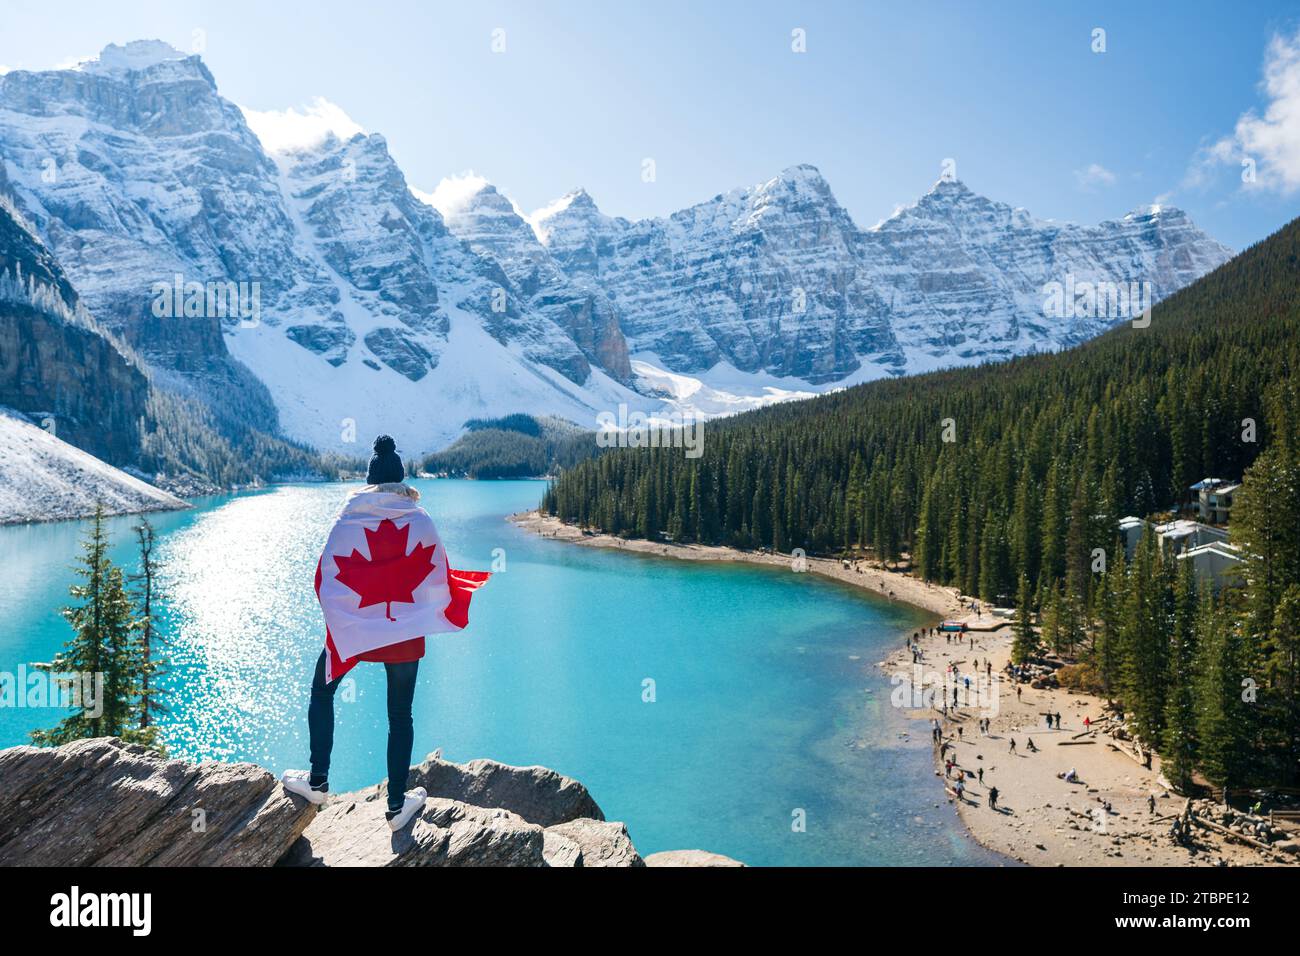 Touristen mit kanadischer Flagge und schöner Landschaft des Moraine Sees. Banff National Park. Kanadische Rockies. Alberta, Kanada. Stockfoto